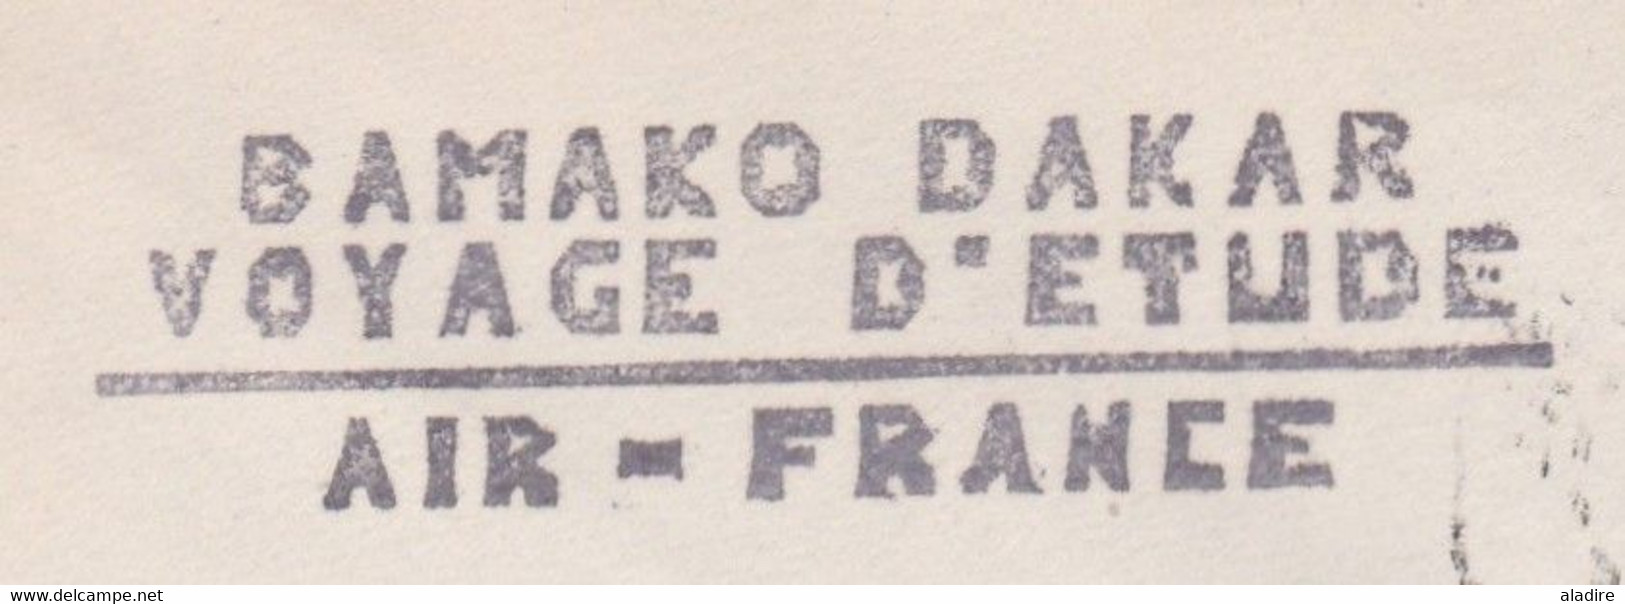 1937 - Enveloppe Par Avion De Bamako, Soudan à Dakar, Sénégal  - Voyage D'étude Air France - Brieven En Documenten